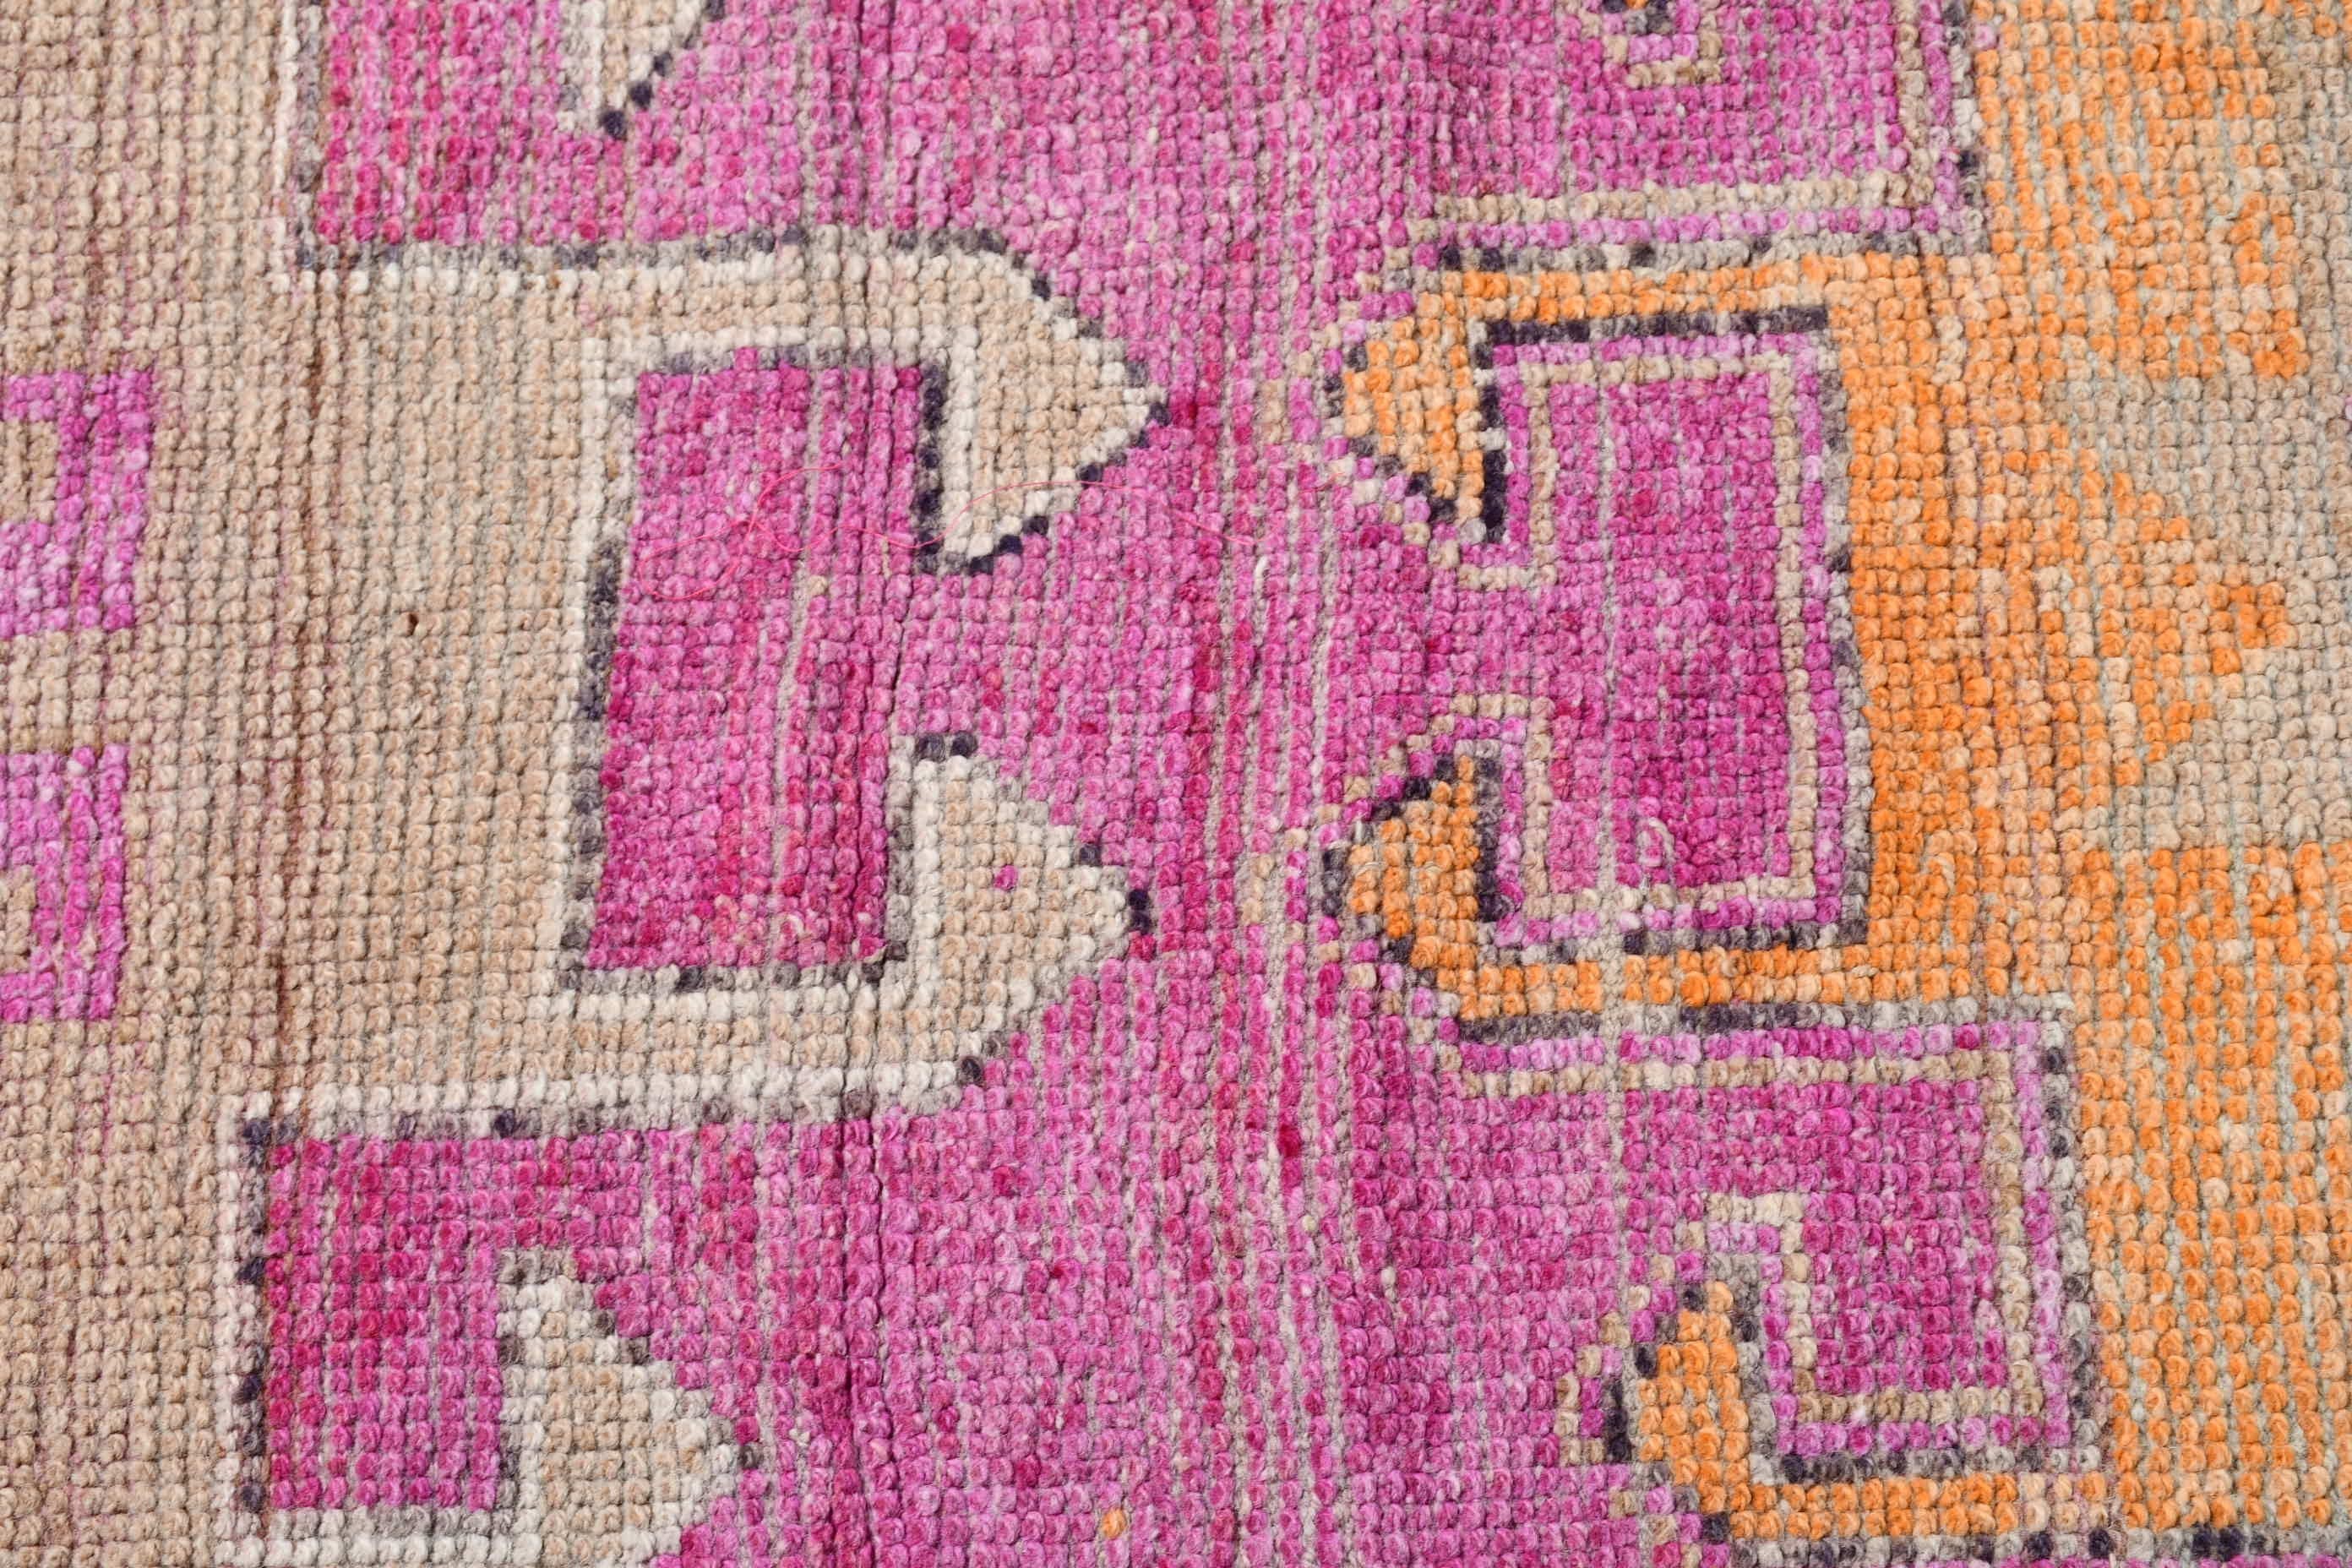 Stair Rug, Wool Rugs, Antique Rug, Natural Rug, Rugs for Stair, Vintage Rug, Pink Kitchen Rugs, 3.1x11.1 ft Runner Rug, Turkish Rug